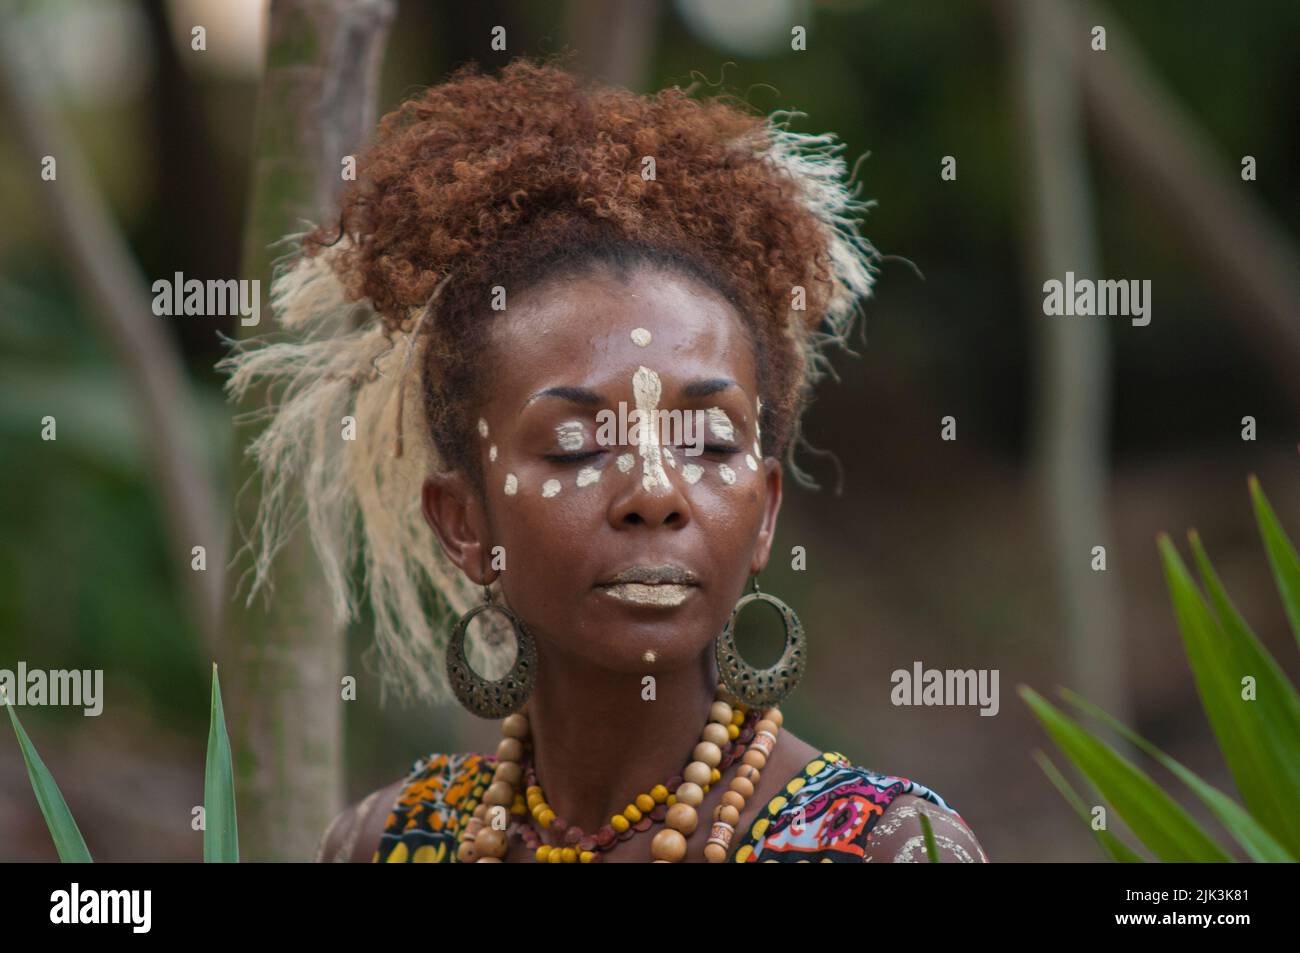 Gros plan d'une jeune femme brésilienne indigène lors d'un événement tribal dans la forêt tropicale Banque D'Images